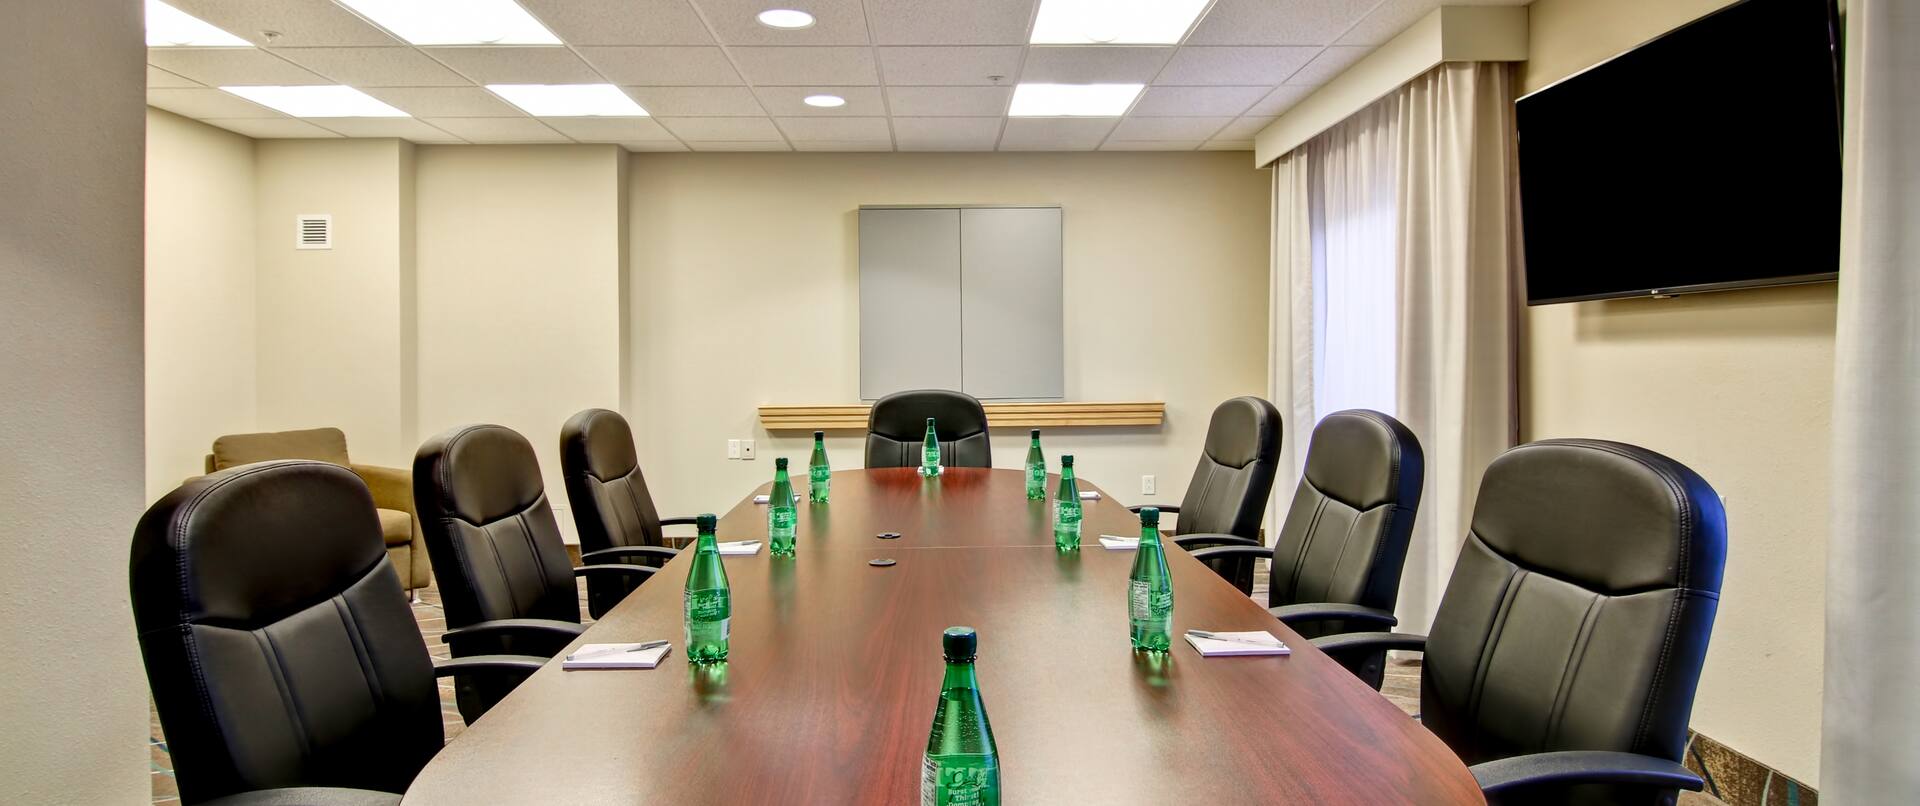 Salle de conférence aménagée pour une réunion